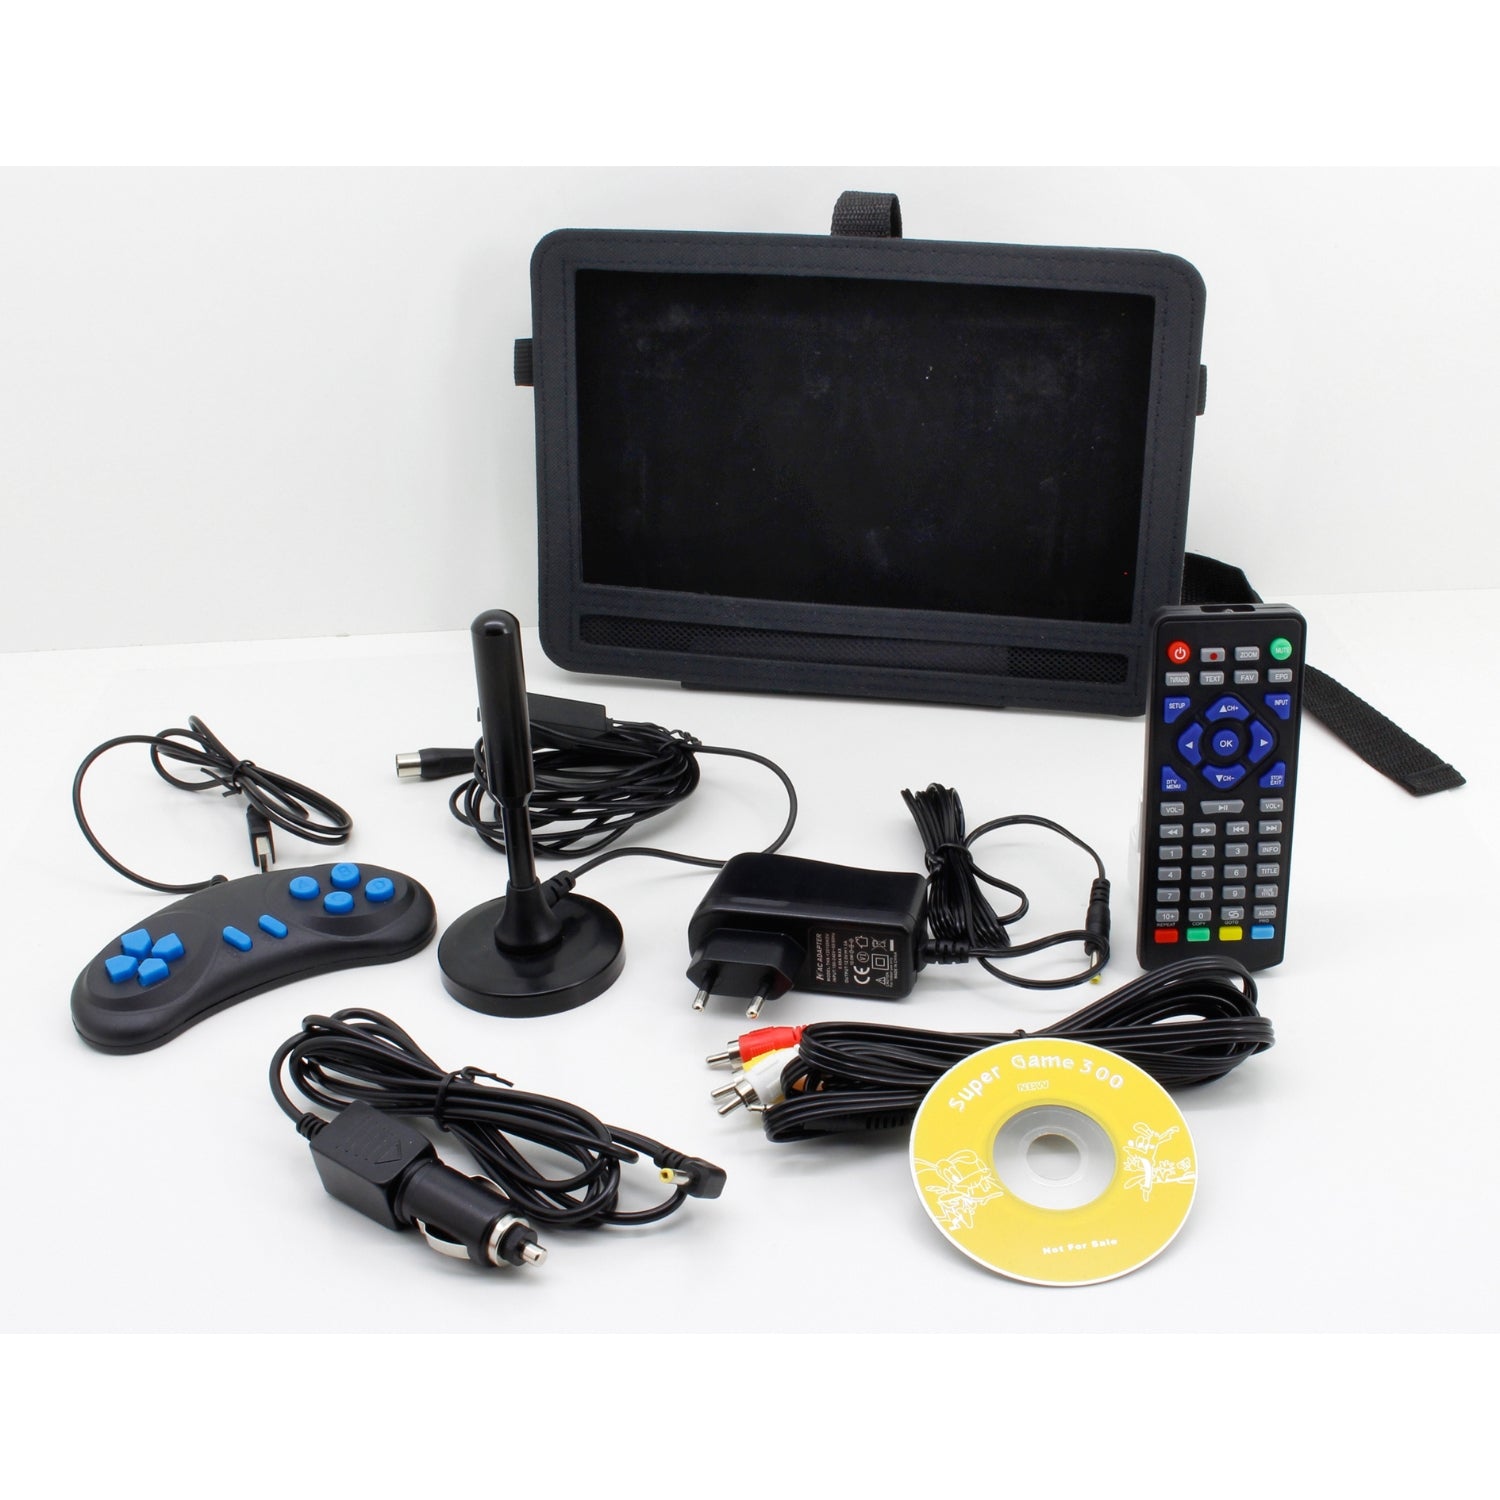 Soundmaster PDB1910SW tragbarer DVD-Player mit DVB-T2 HD-Tuner und 10.1. TFT Bildschirm inkl. 300 Spielen